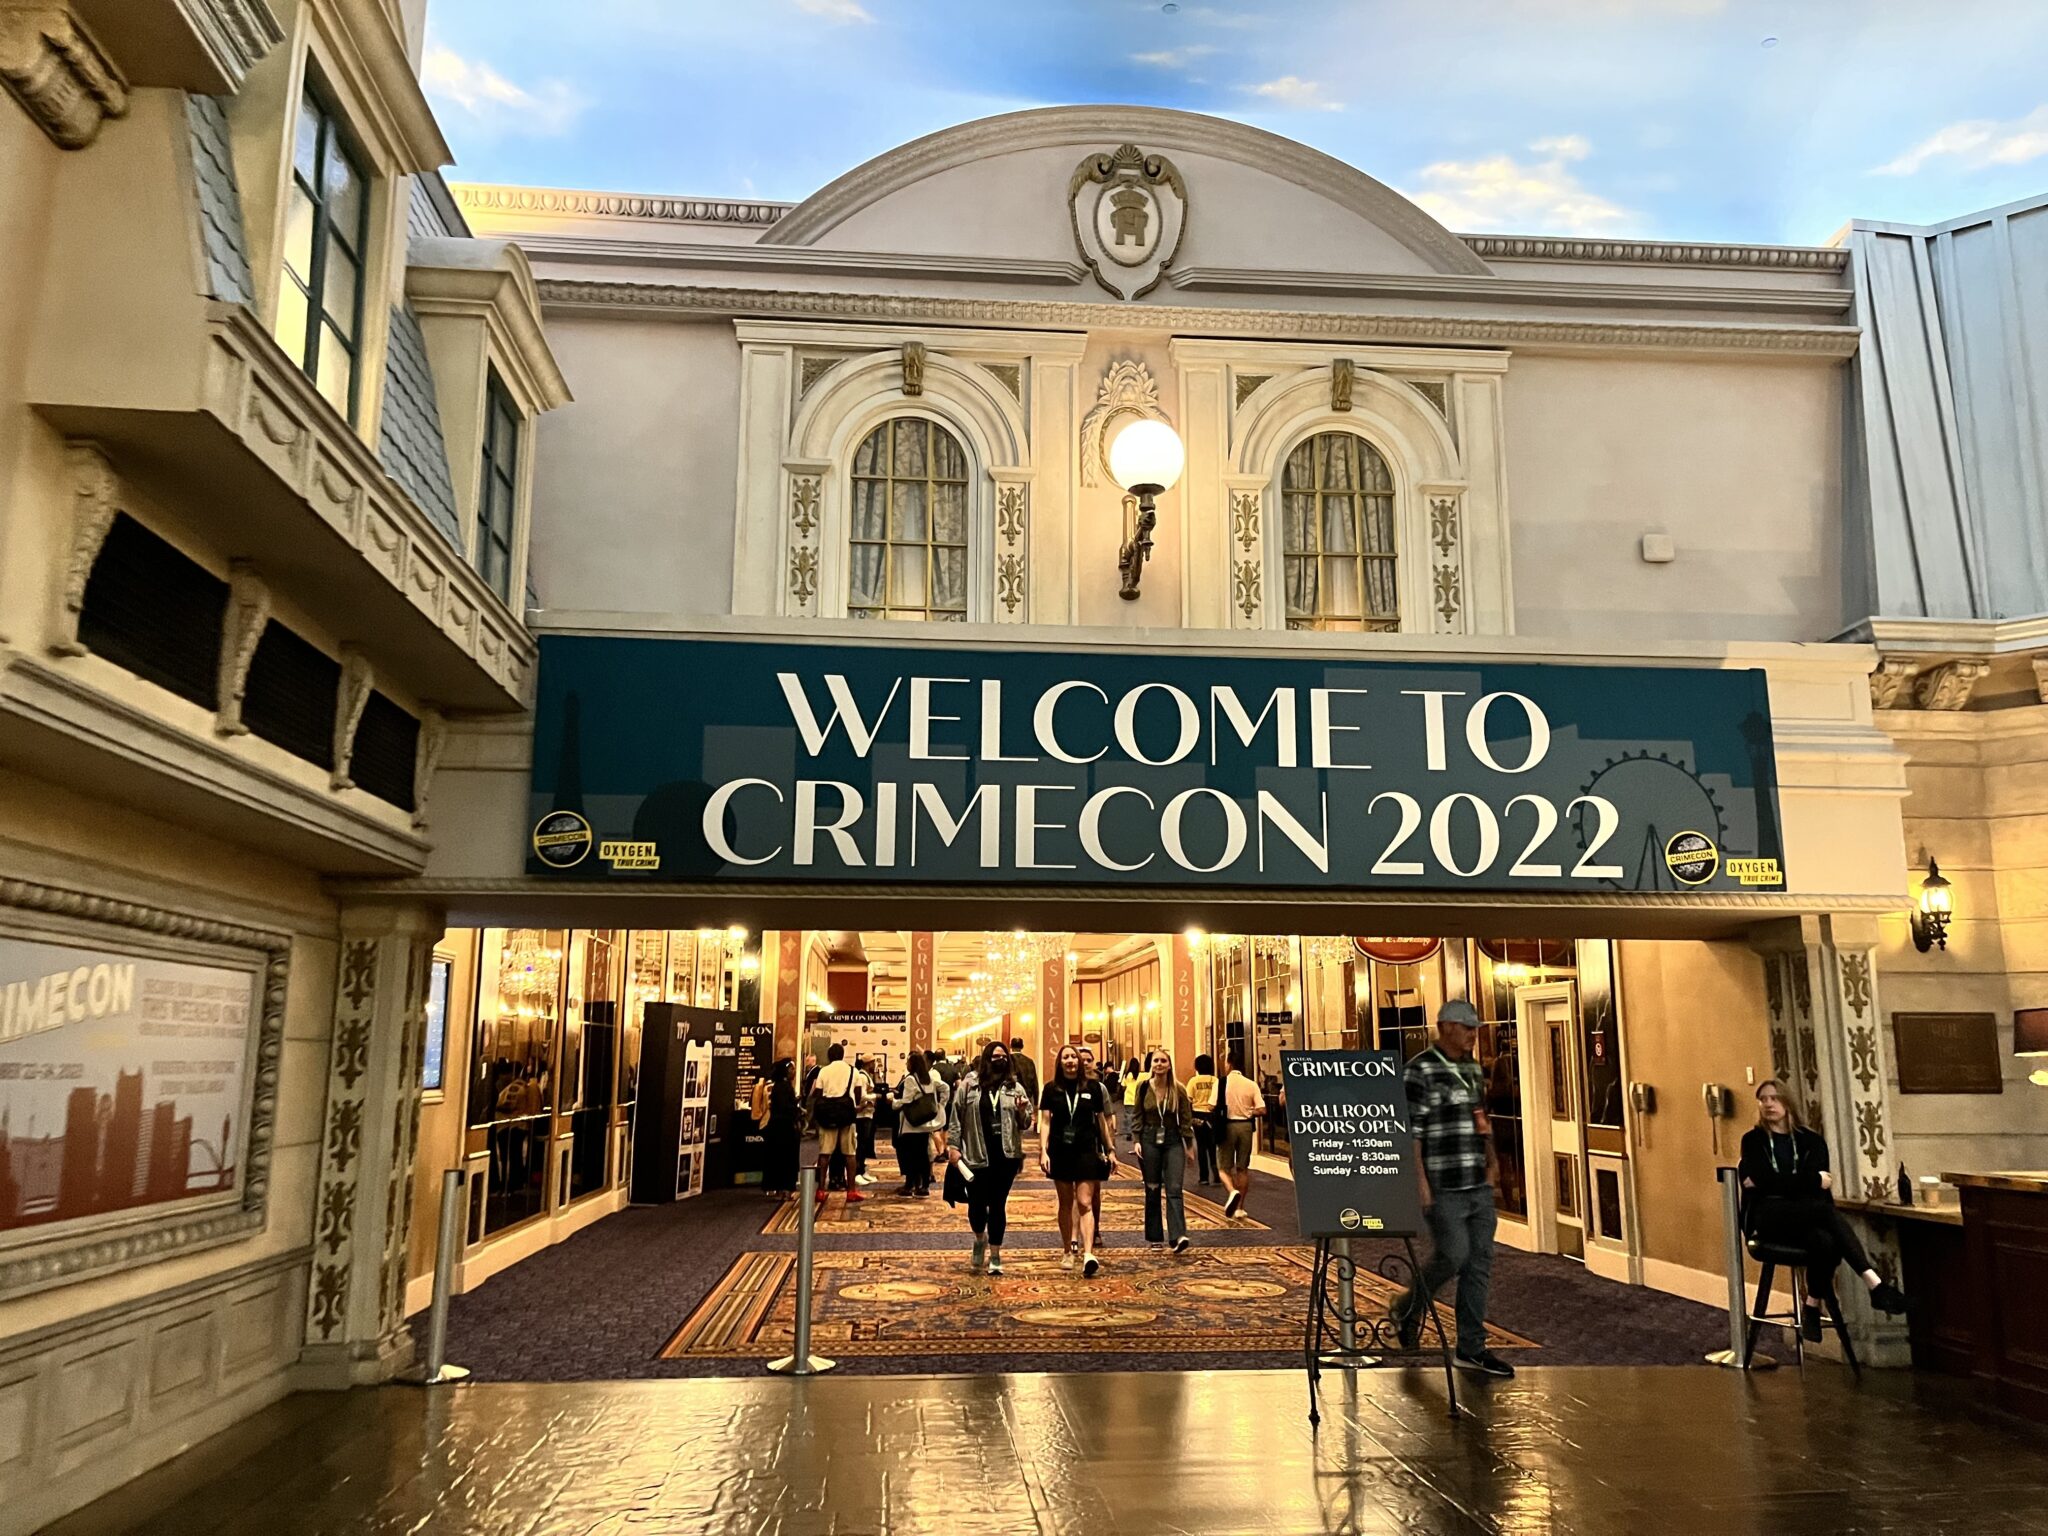 Entrance to CrimeCon 2022